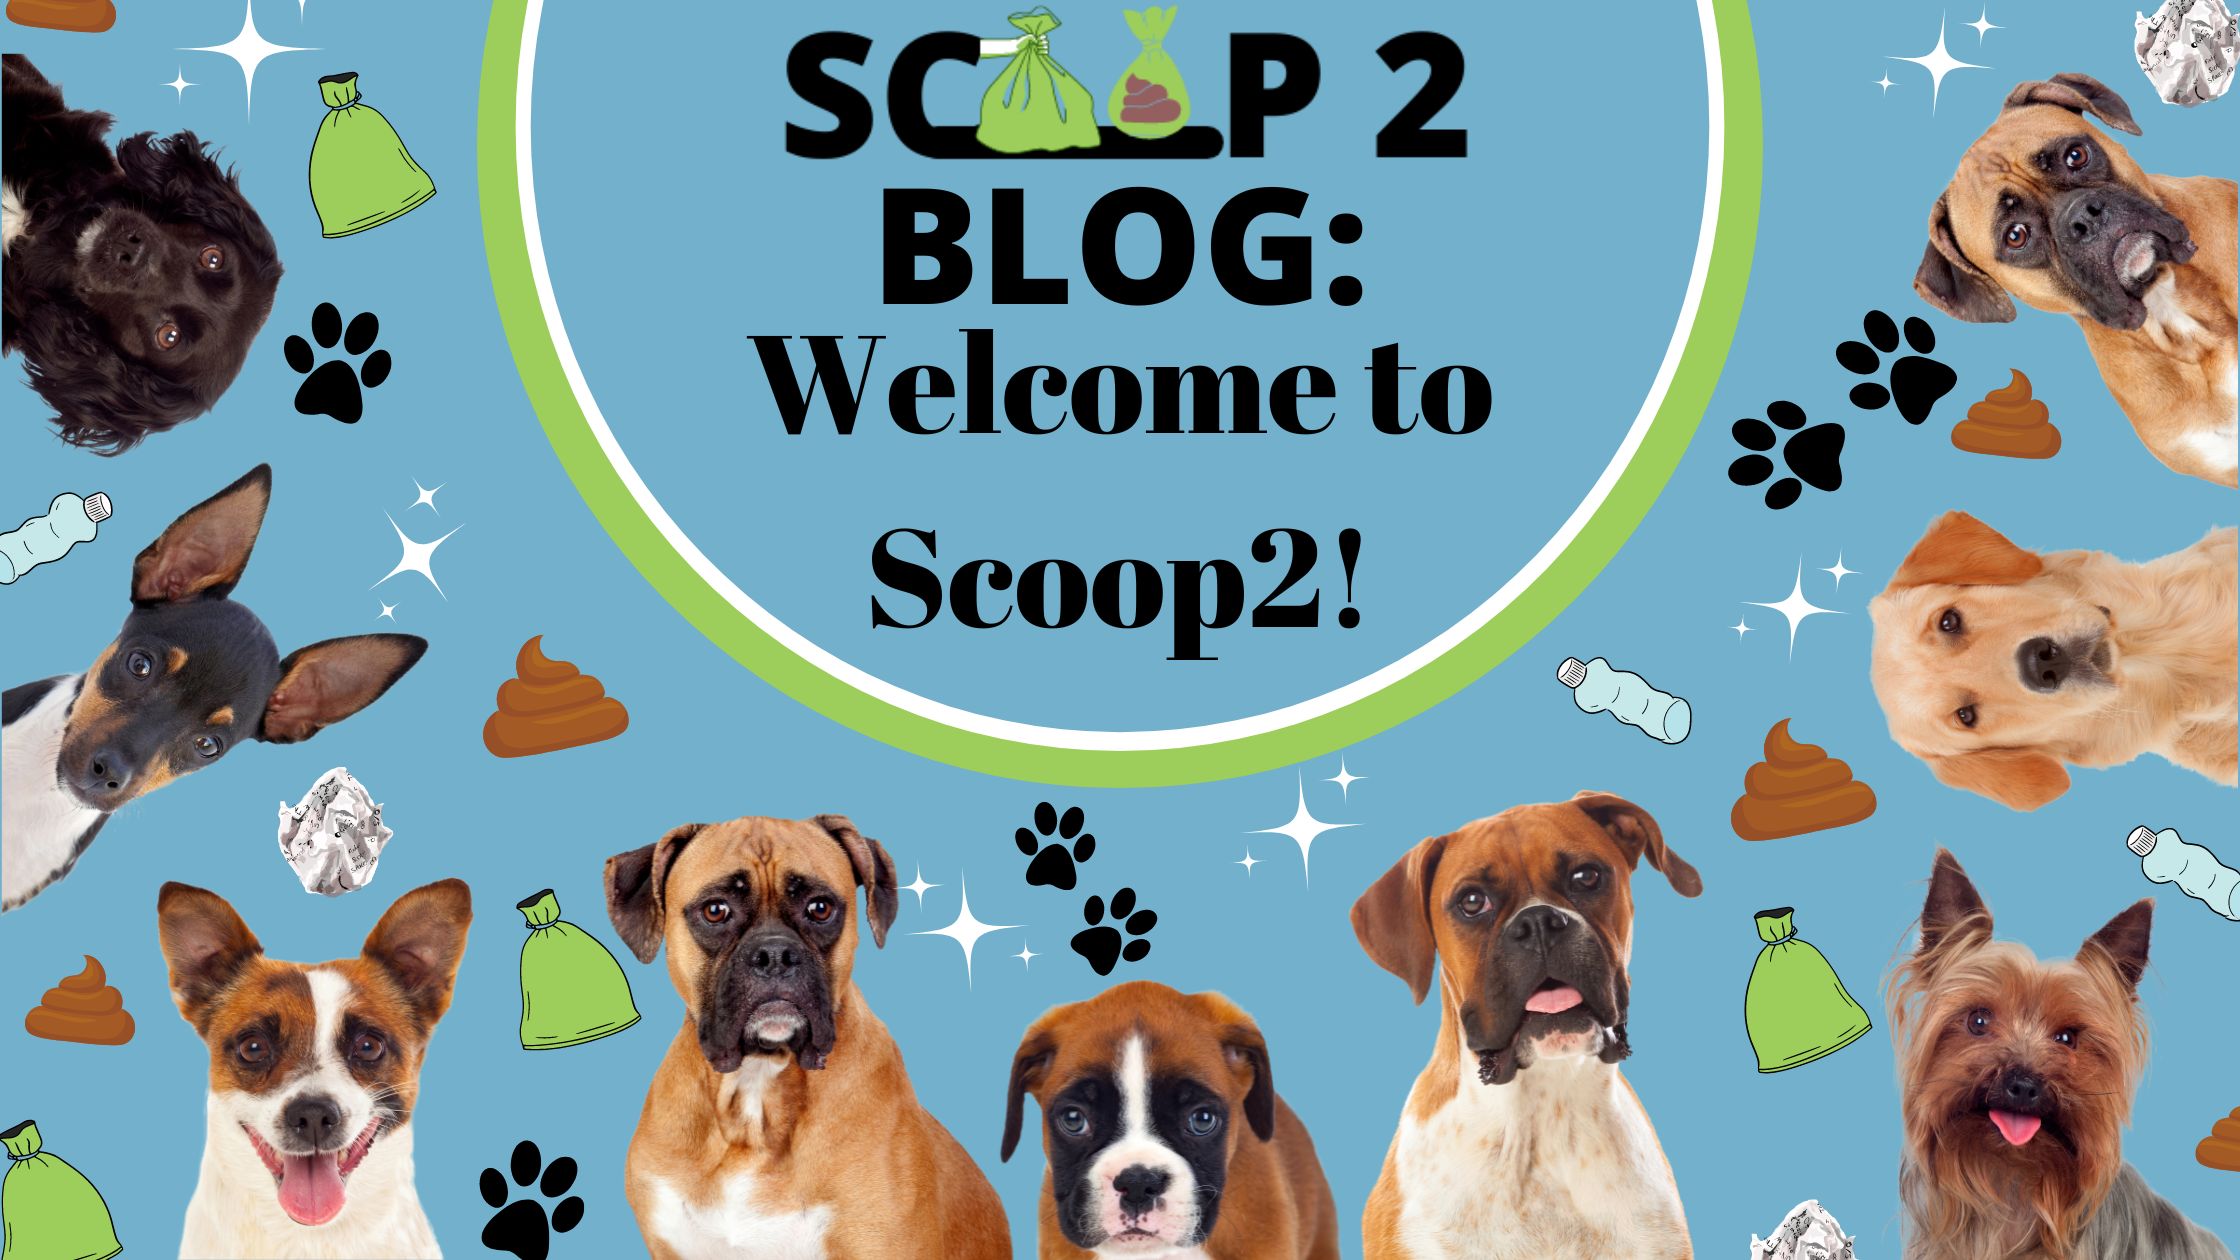 Scoop2 Blog: welcome to scoop2!